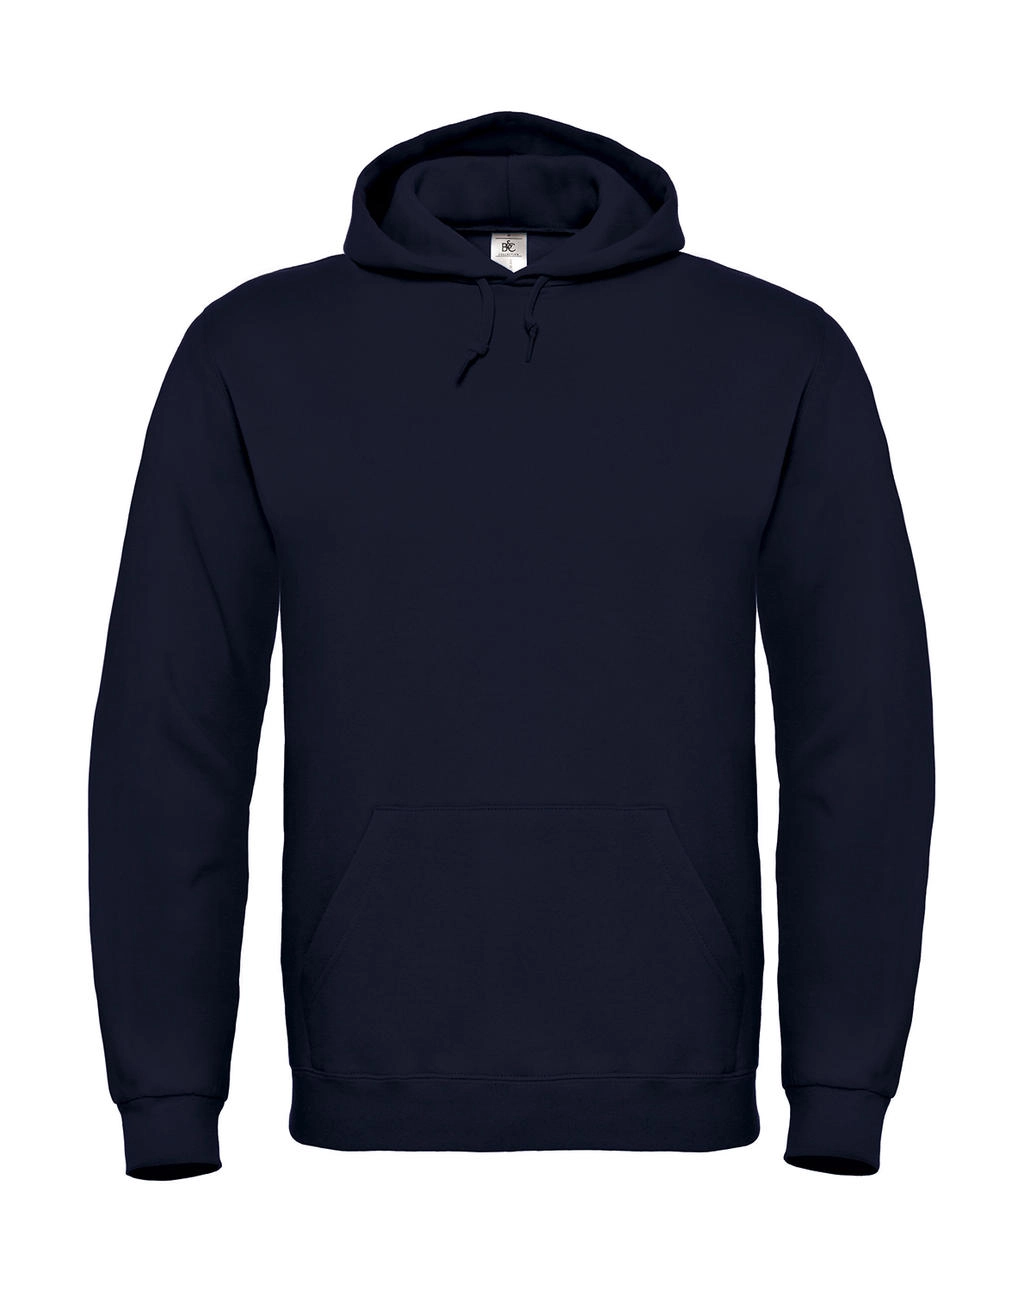 ID.003 Cotton Rich Hooded Sweatshirt zum Besticken und Bedrucken in der Farbe Navy mit Ihren Logo, Schriftzug oder Motiv.